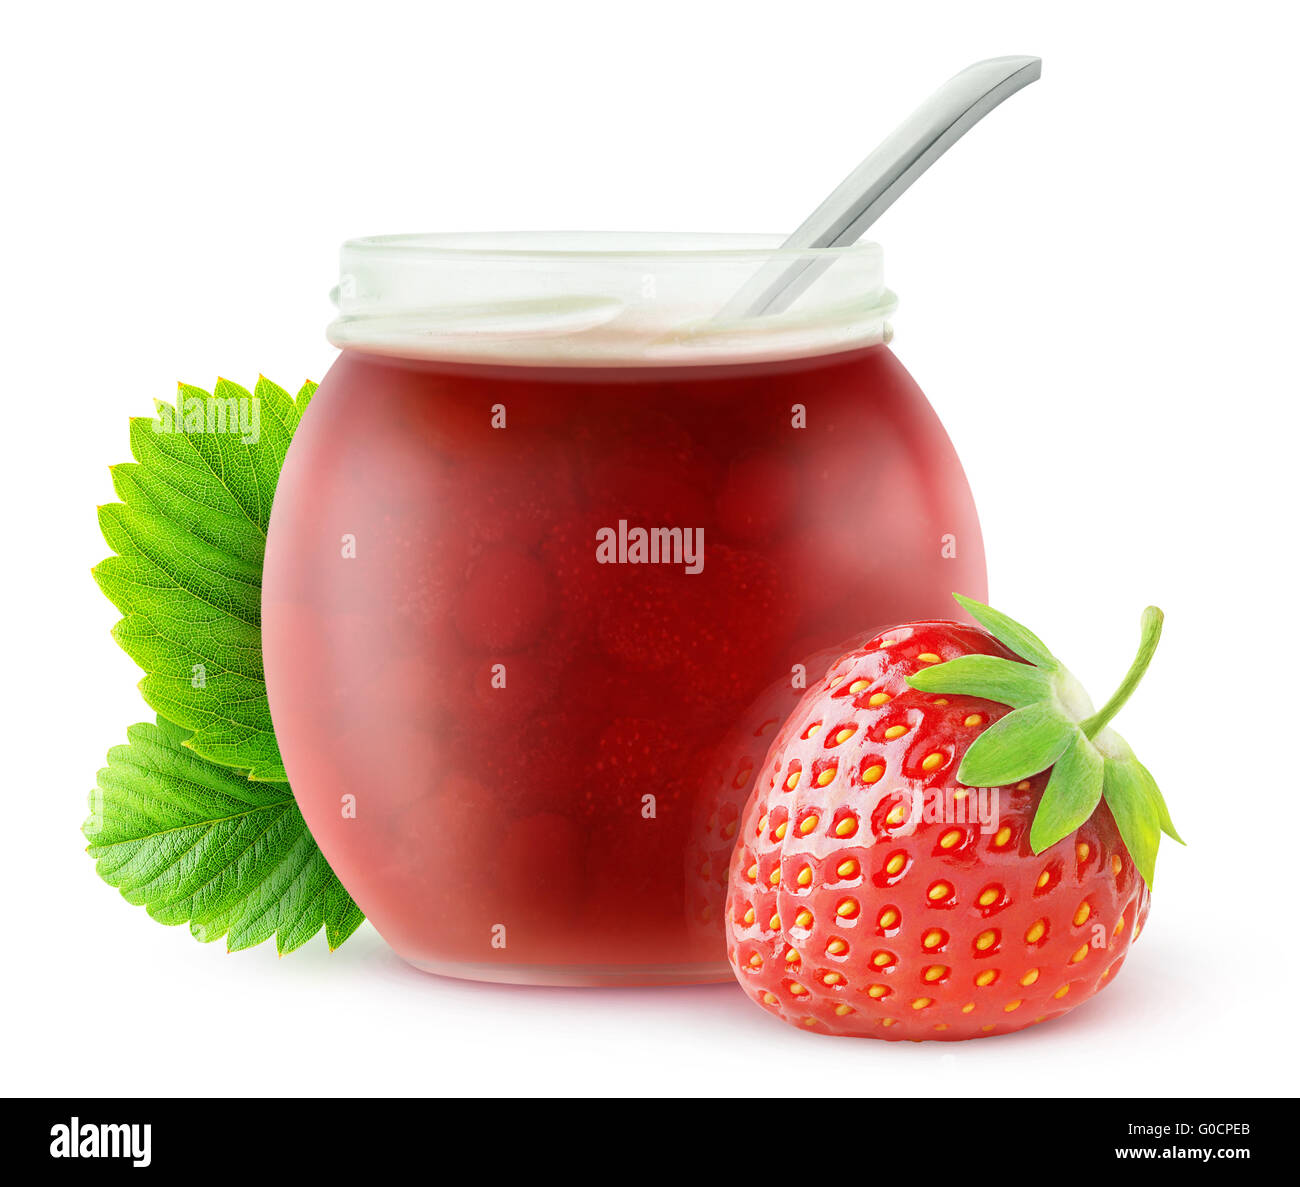 Isolierte Erdbeermarmelade. Erdbeere Frucht und offenen Glas jar mit Marmelade, isoliert auf weißem Hintergrund mit Beschneidungspfad Stockfoto